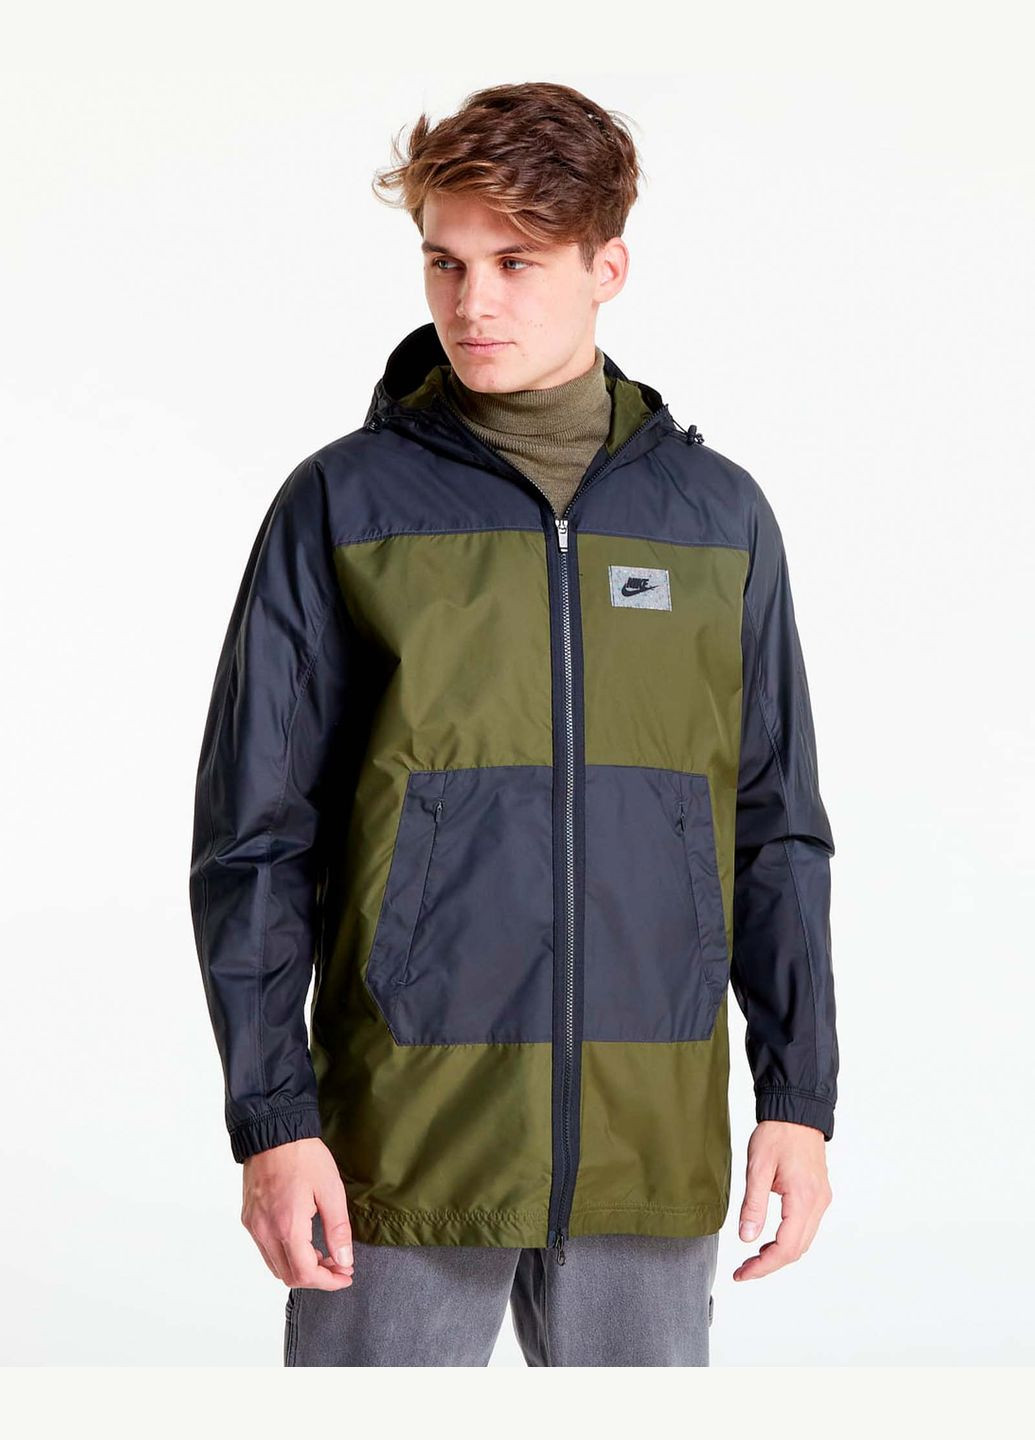 Зеленая демисезонная куртка (ветровка) мужская pu woven jacket dx1662-326 вечная-осень черно-оливковая Nike